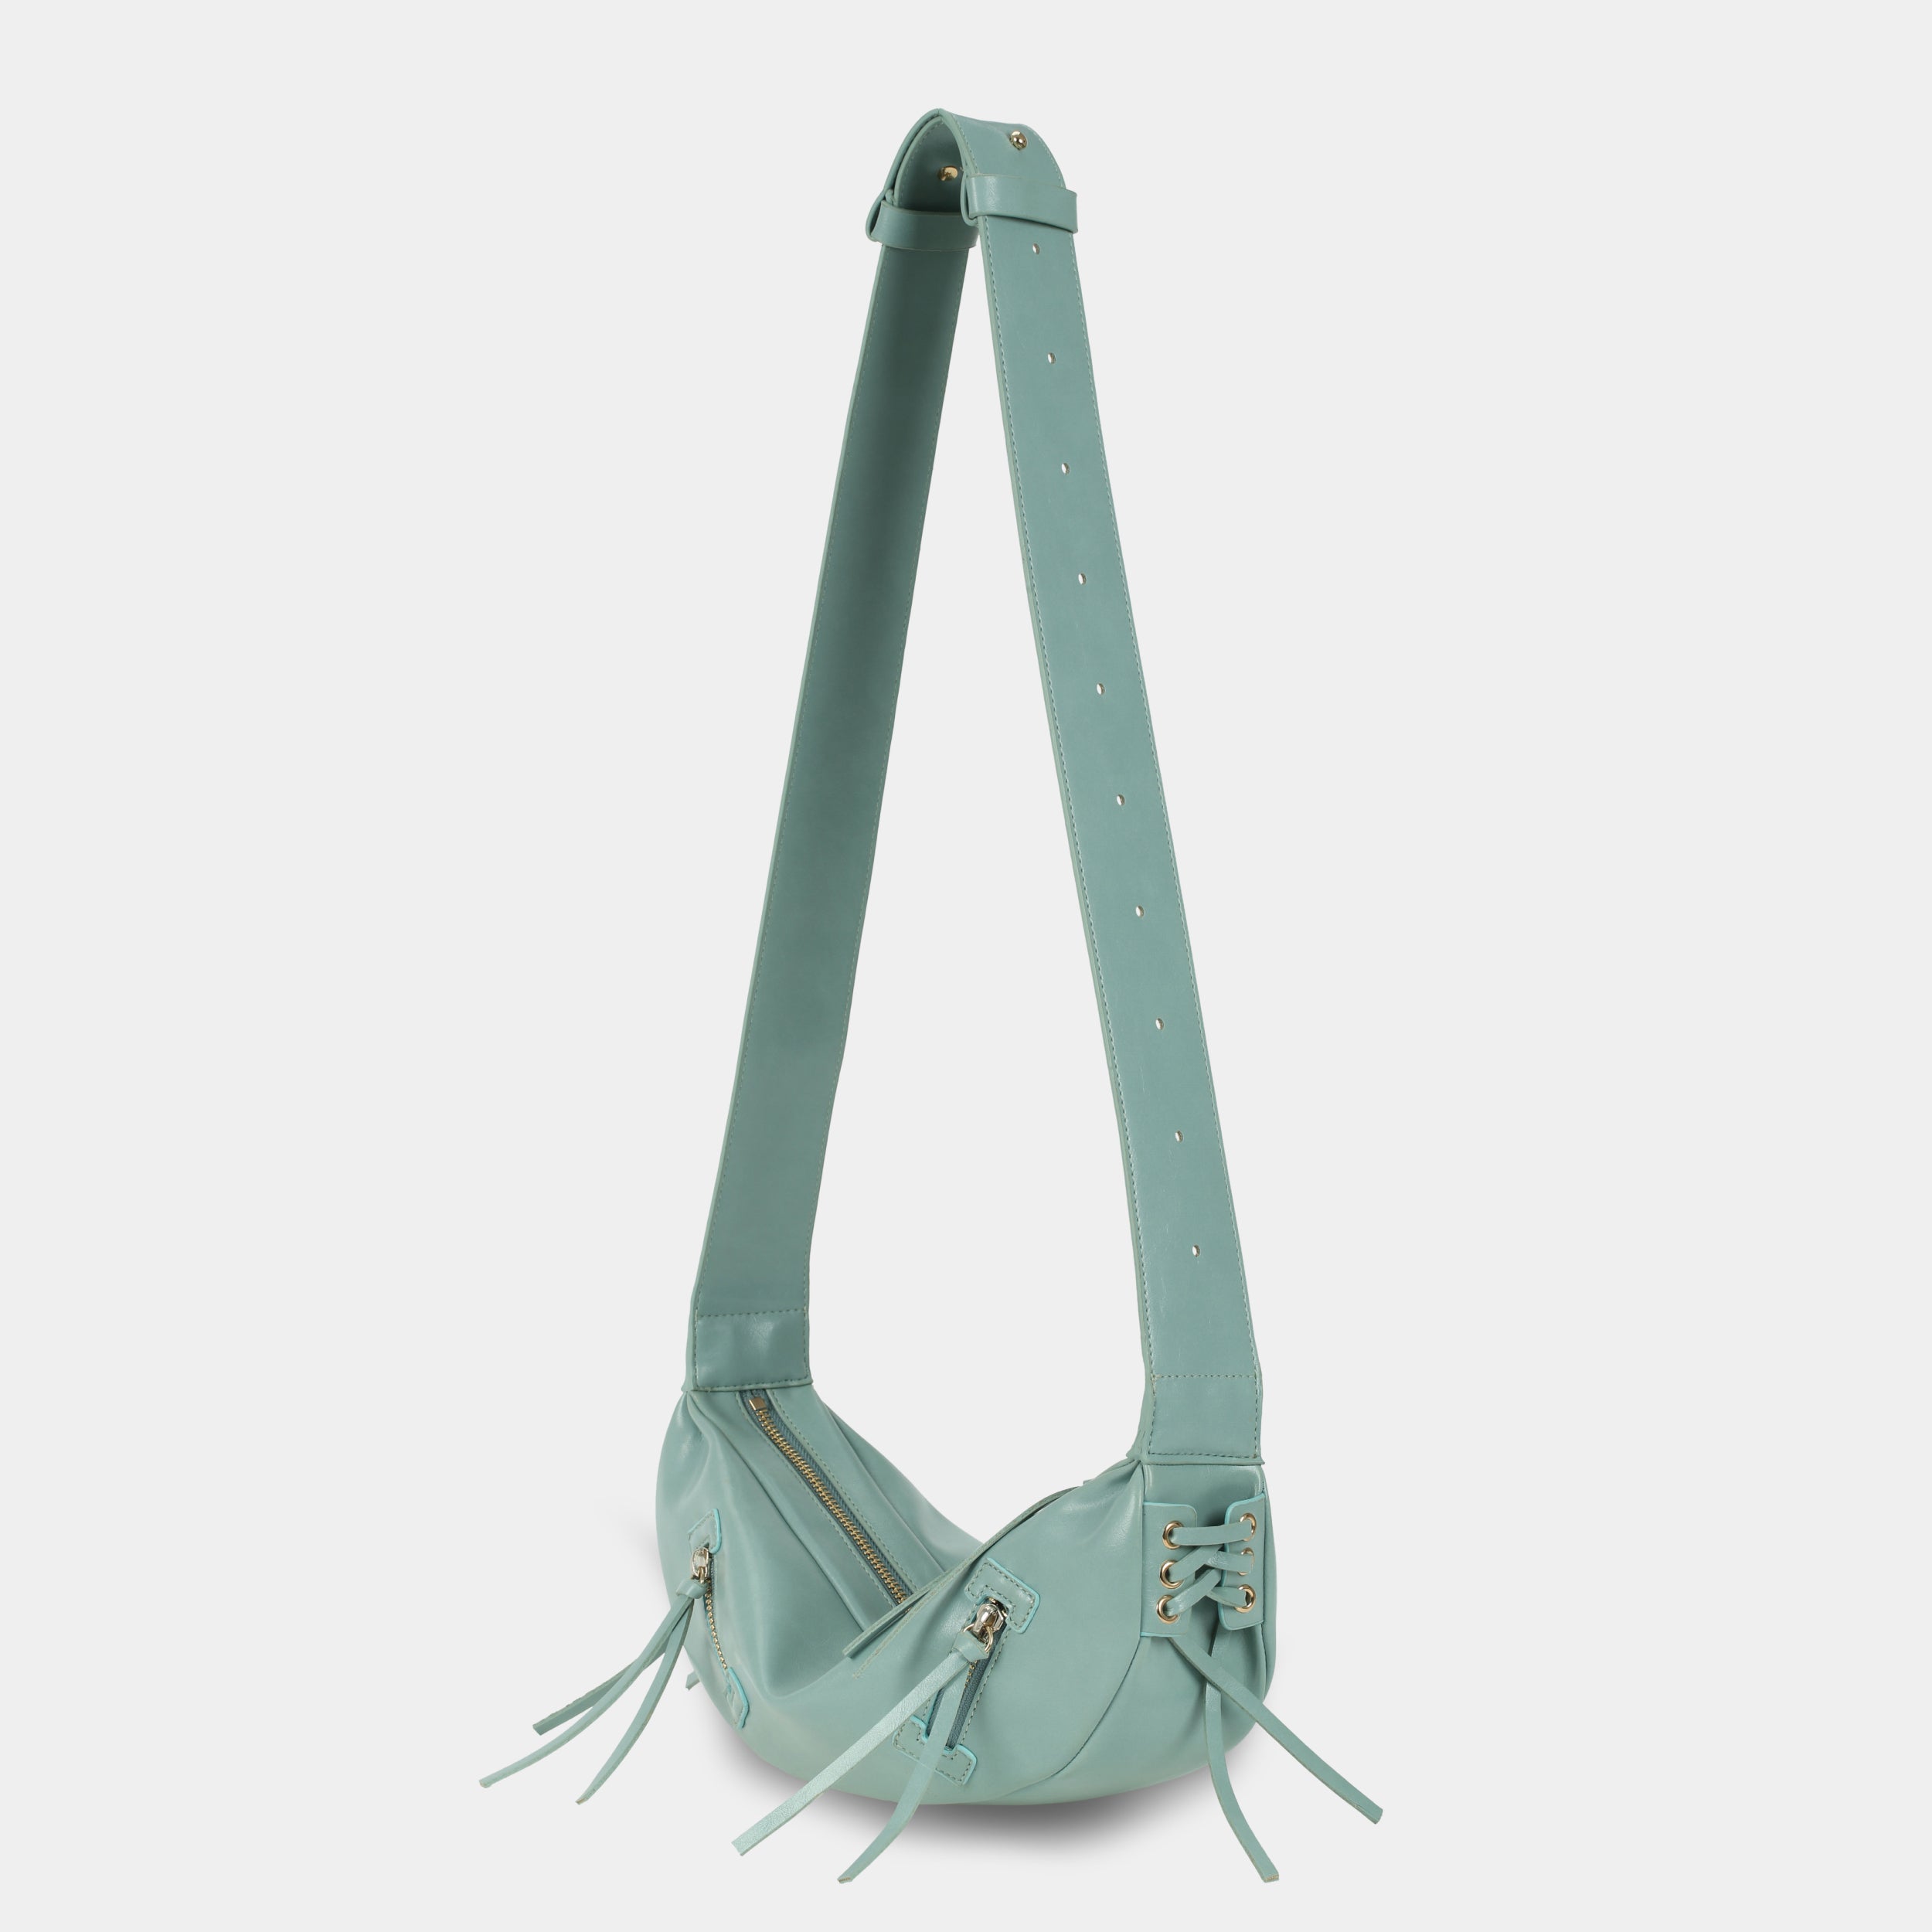 Túi xách LACE size lớn (M) màu xanh ngọc pastel